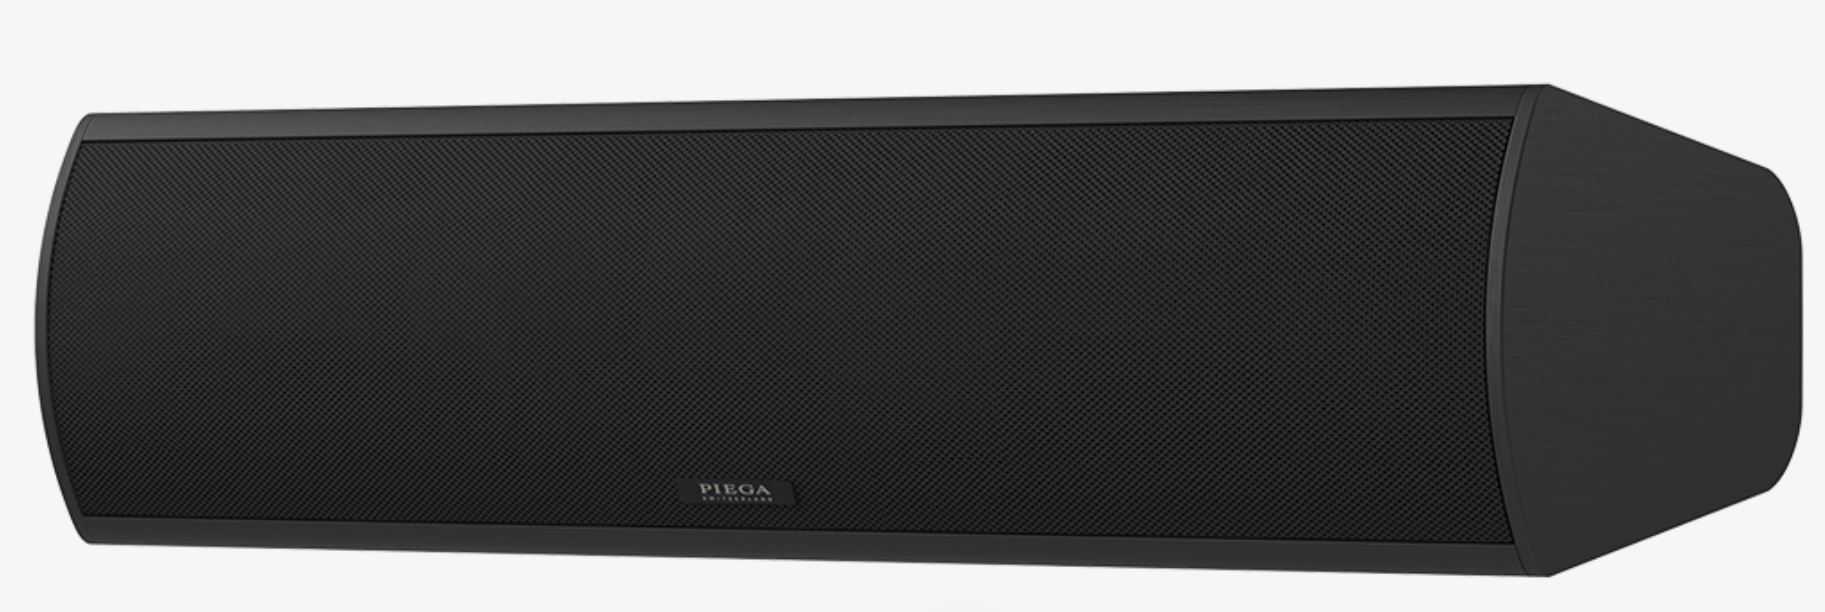 Piega Premium Center Small Speaker Black 6888